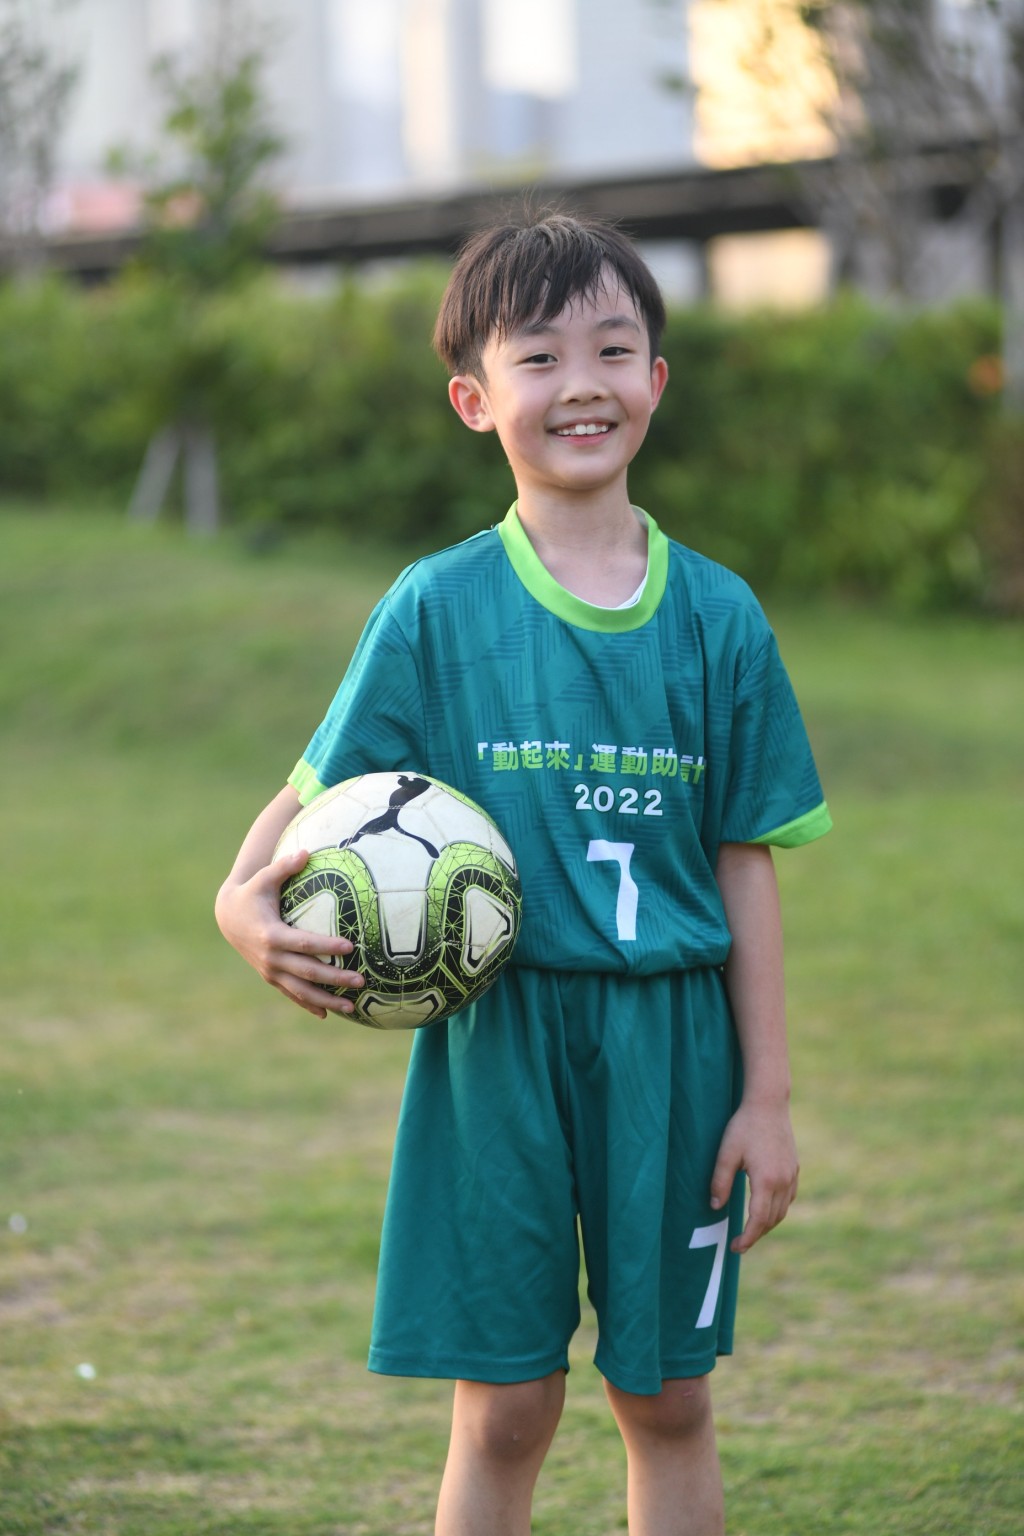 俊煜喜欢踢足球。  本报记者摄